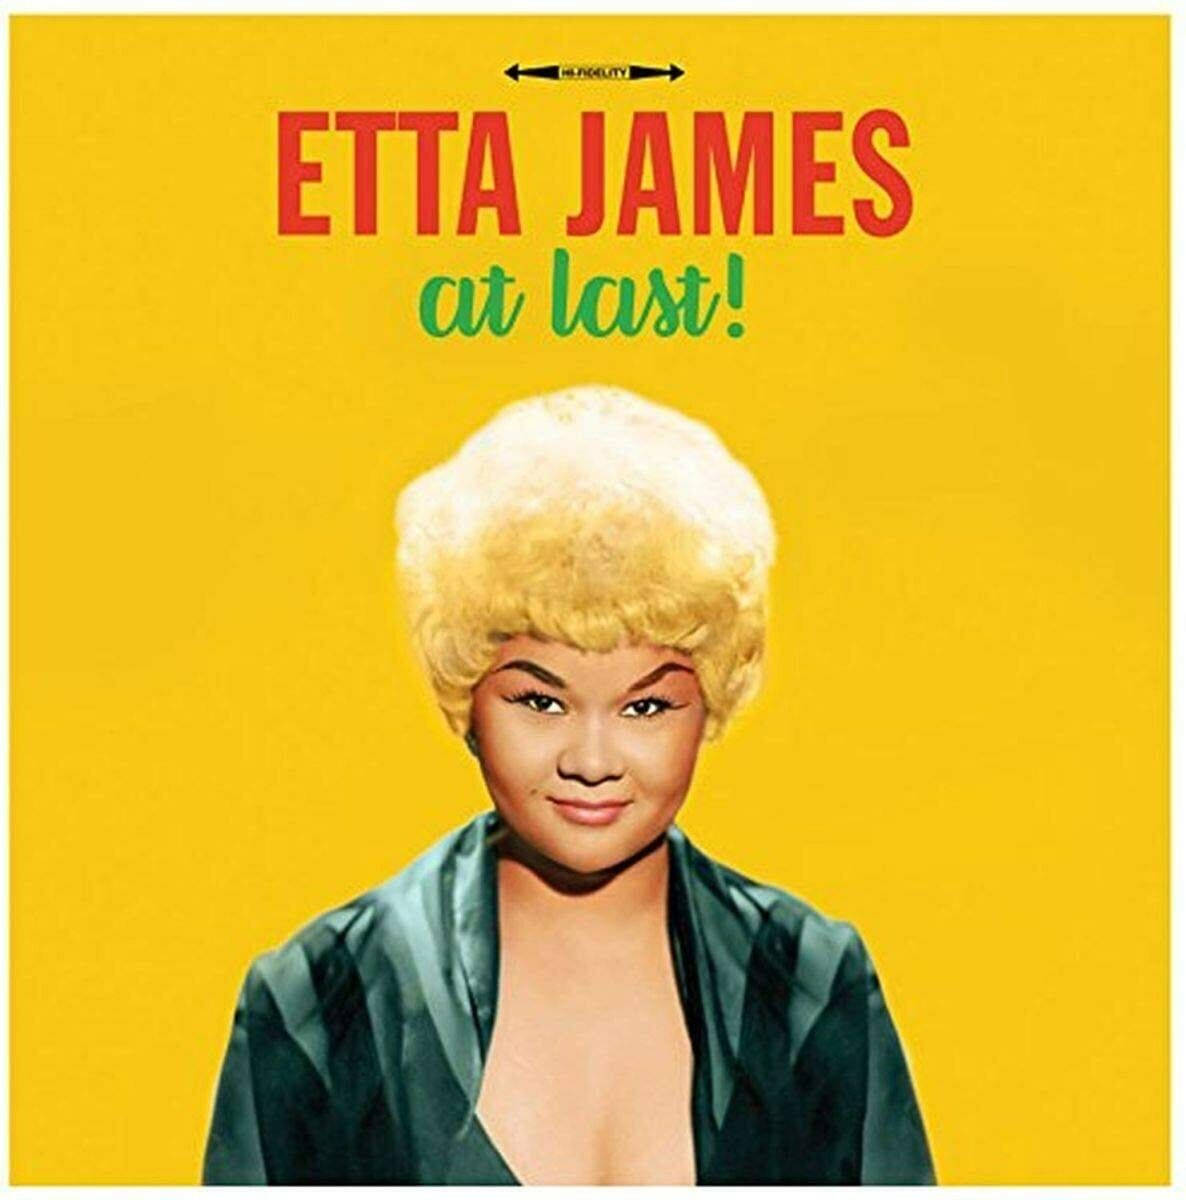 Cantanteestadounidense Etta James, Por Fin Fondo de pantalla